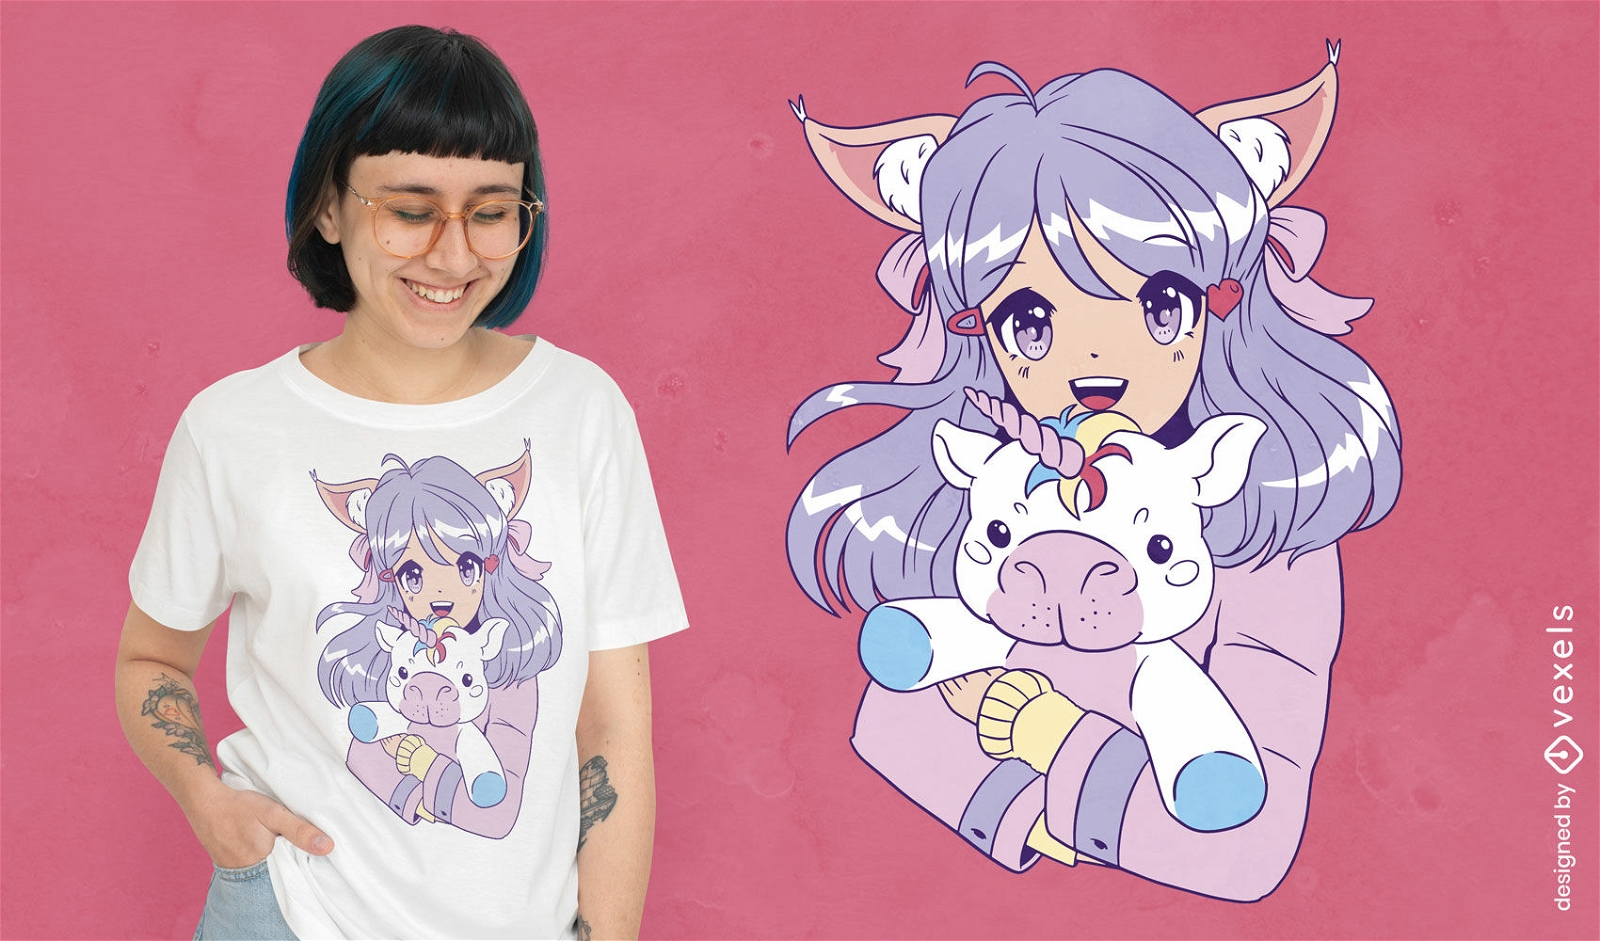 Garota de anime com design de camiseta de unic?rnio